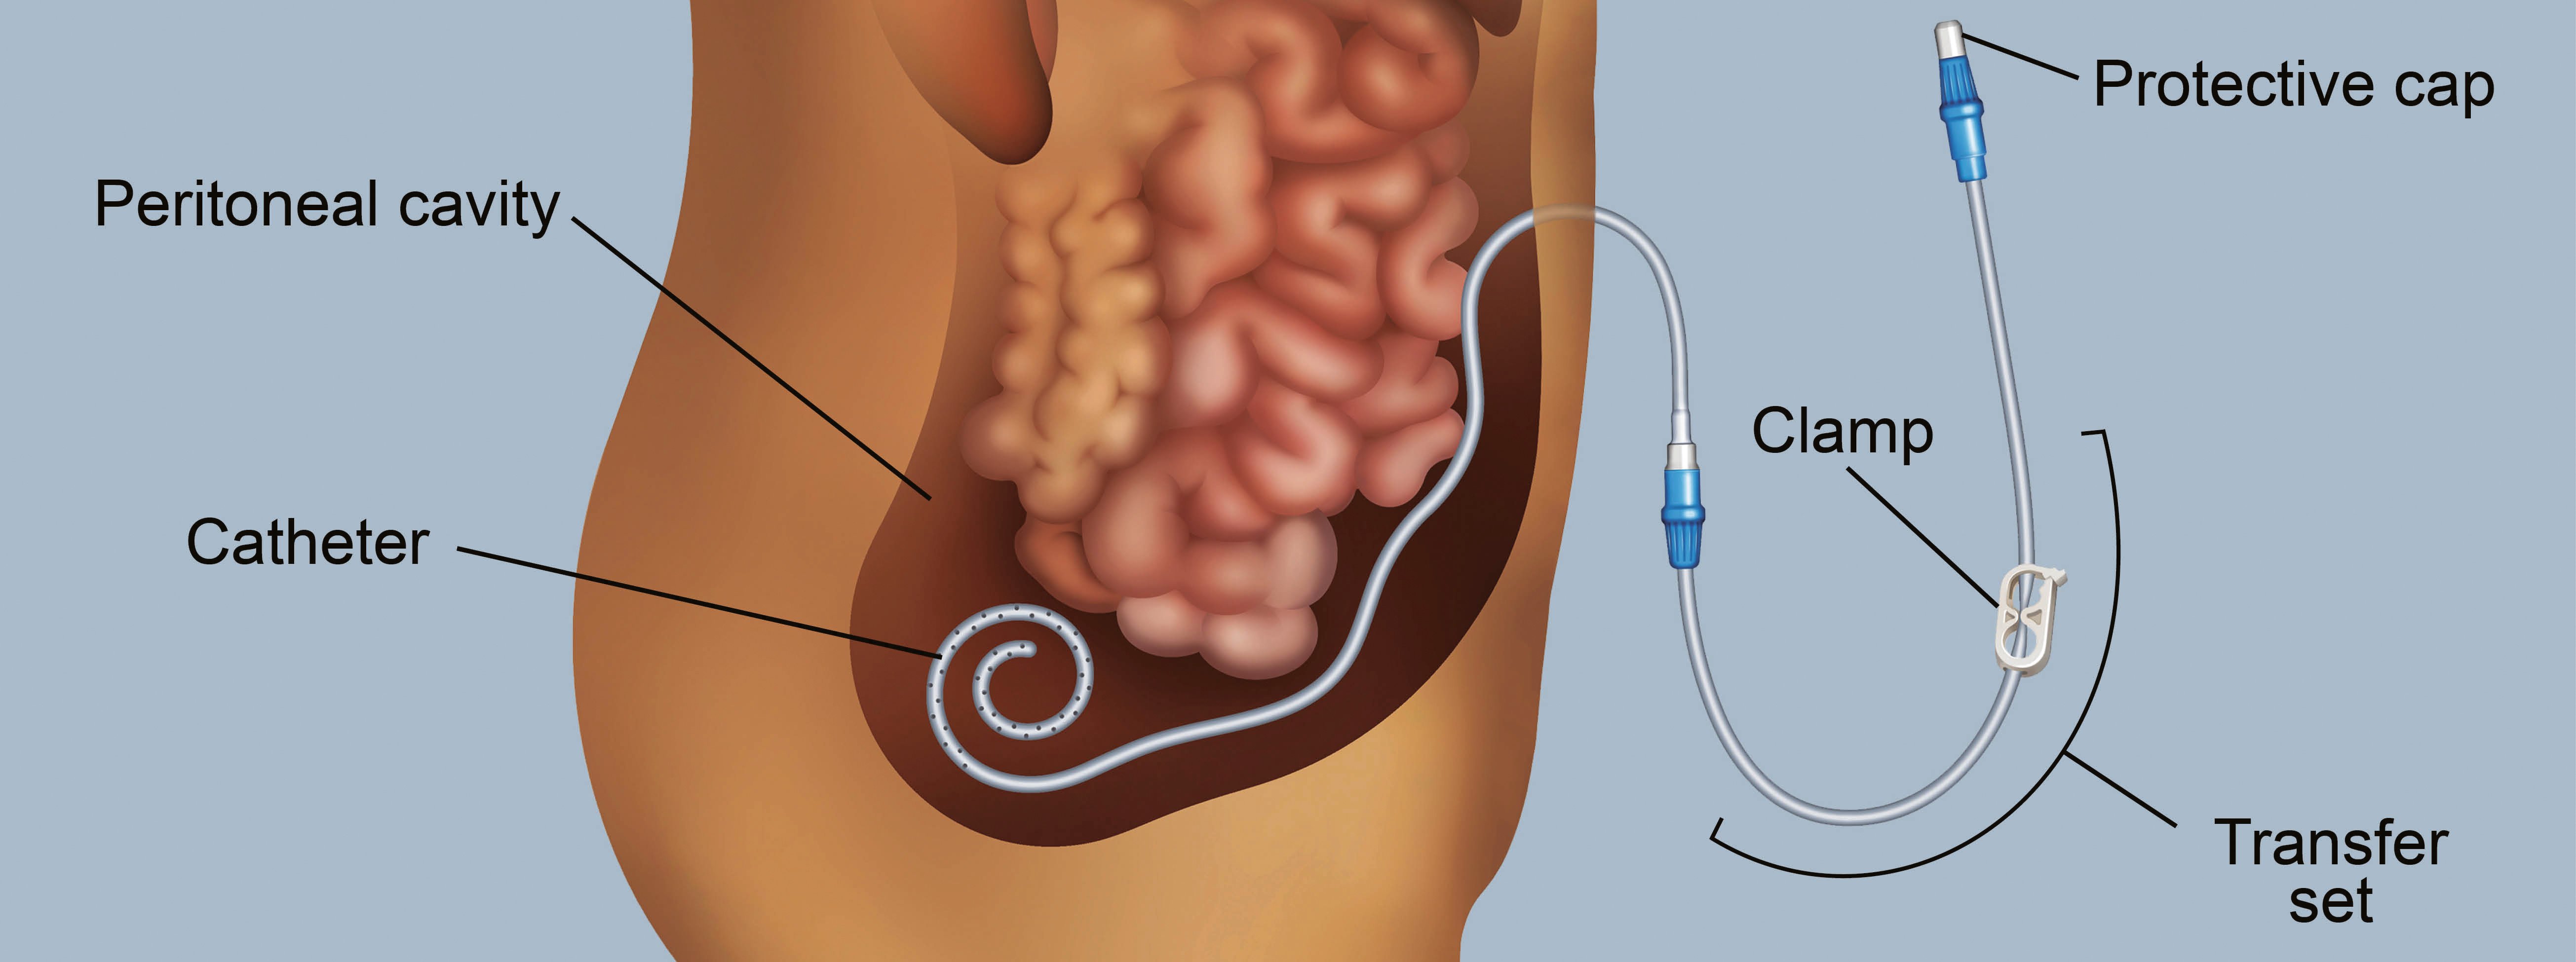 Peritoneal dialysis catheter